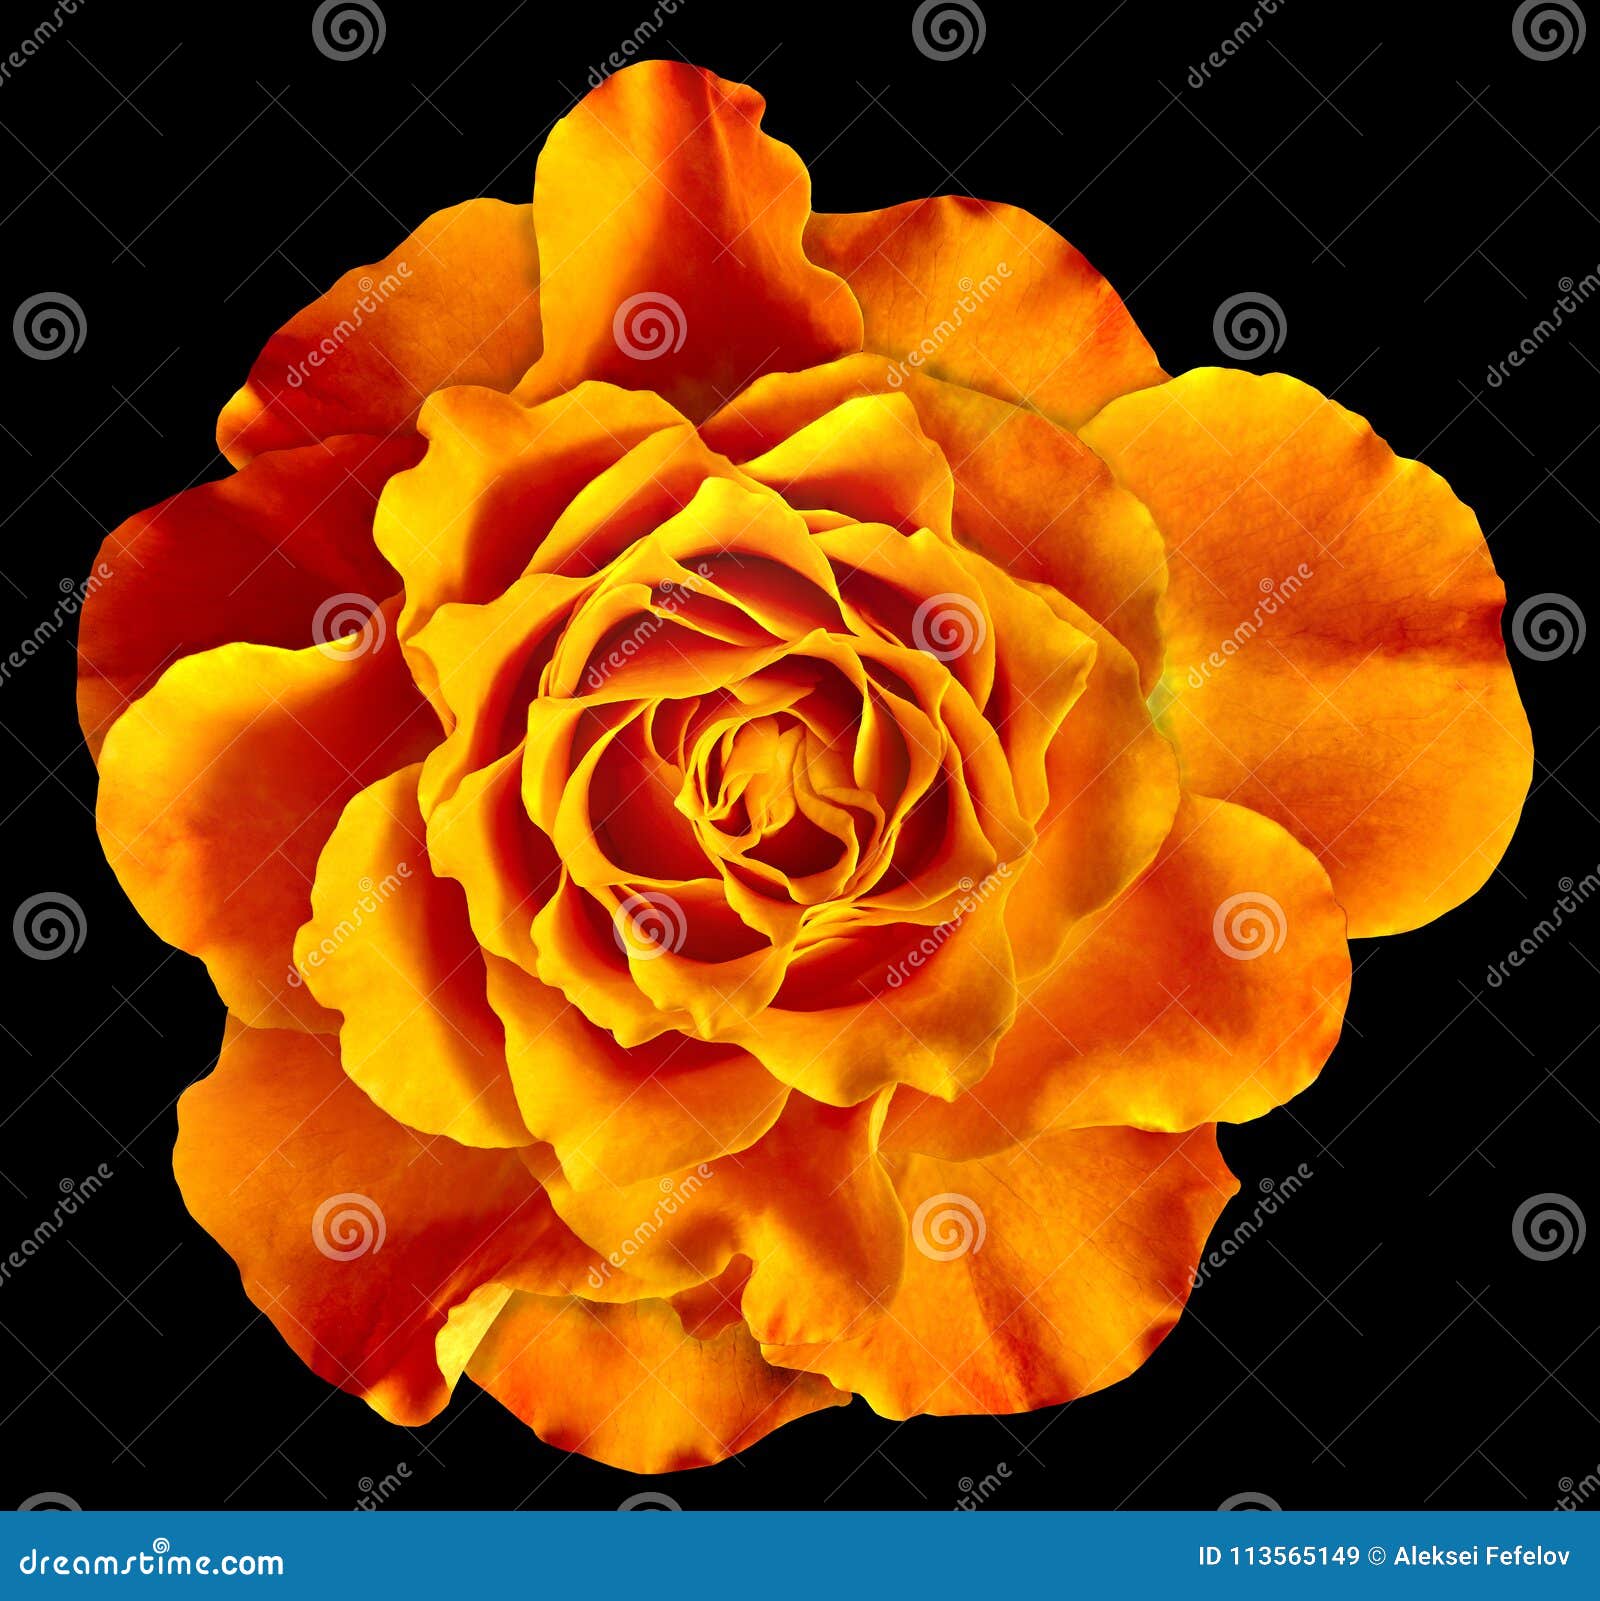 Hãy thưởng thức một bức ảnh tuyệt đẹp với sự kết hợp hoàn hảo giữa màu cam và sự đơn độc của bông hoa hồng. Hình ảnh được chụp với phông nền đơn sắc sẽ làm nổi bật vẻ đẹp của bông hoa và mang đến một cảm giác thư giãn cho mắt.